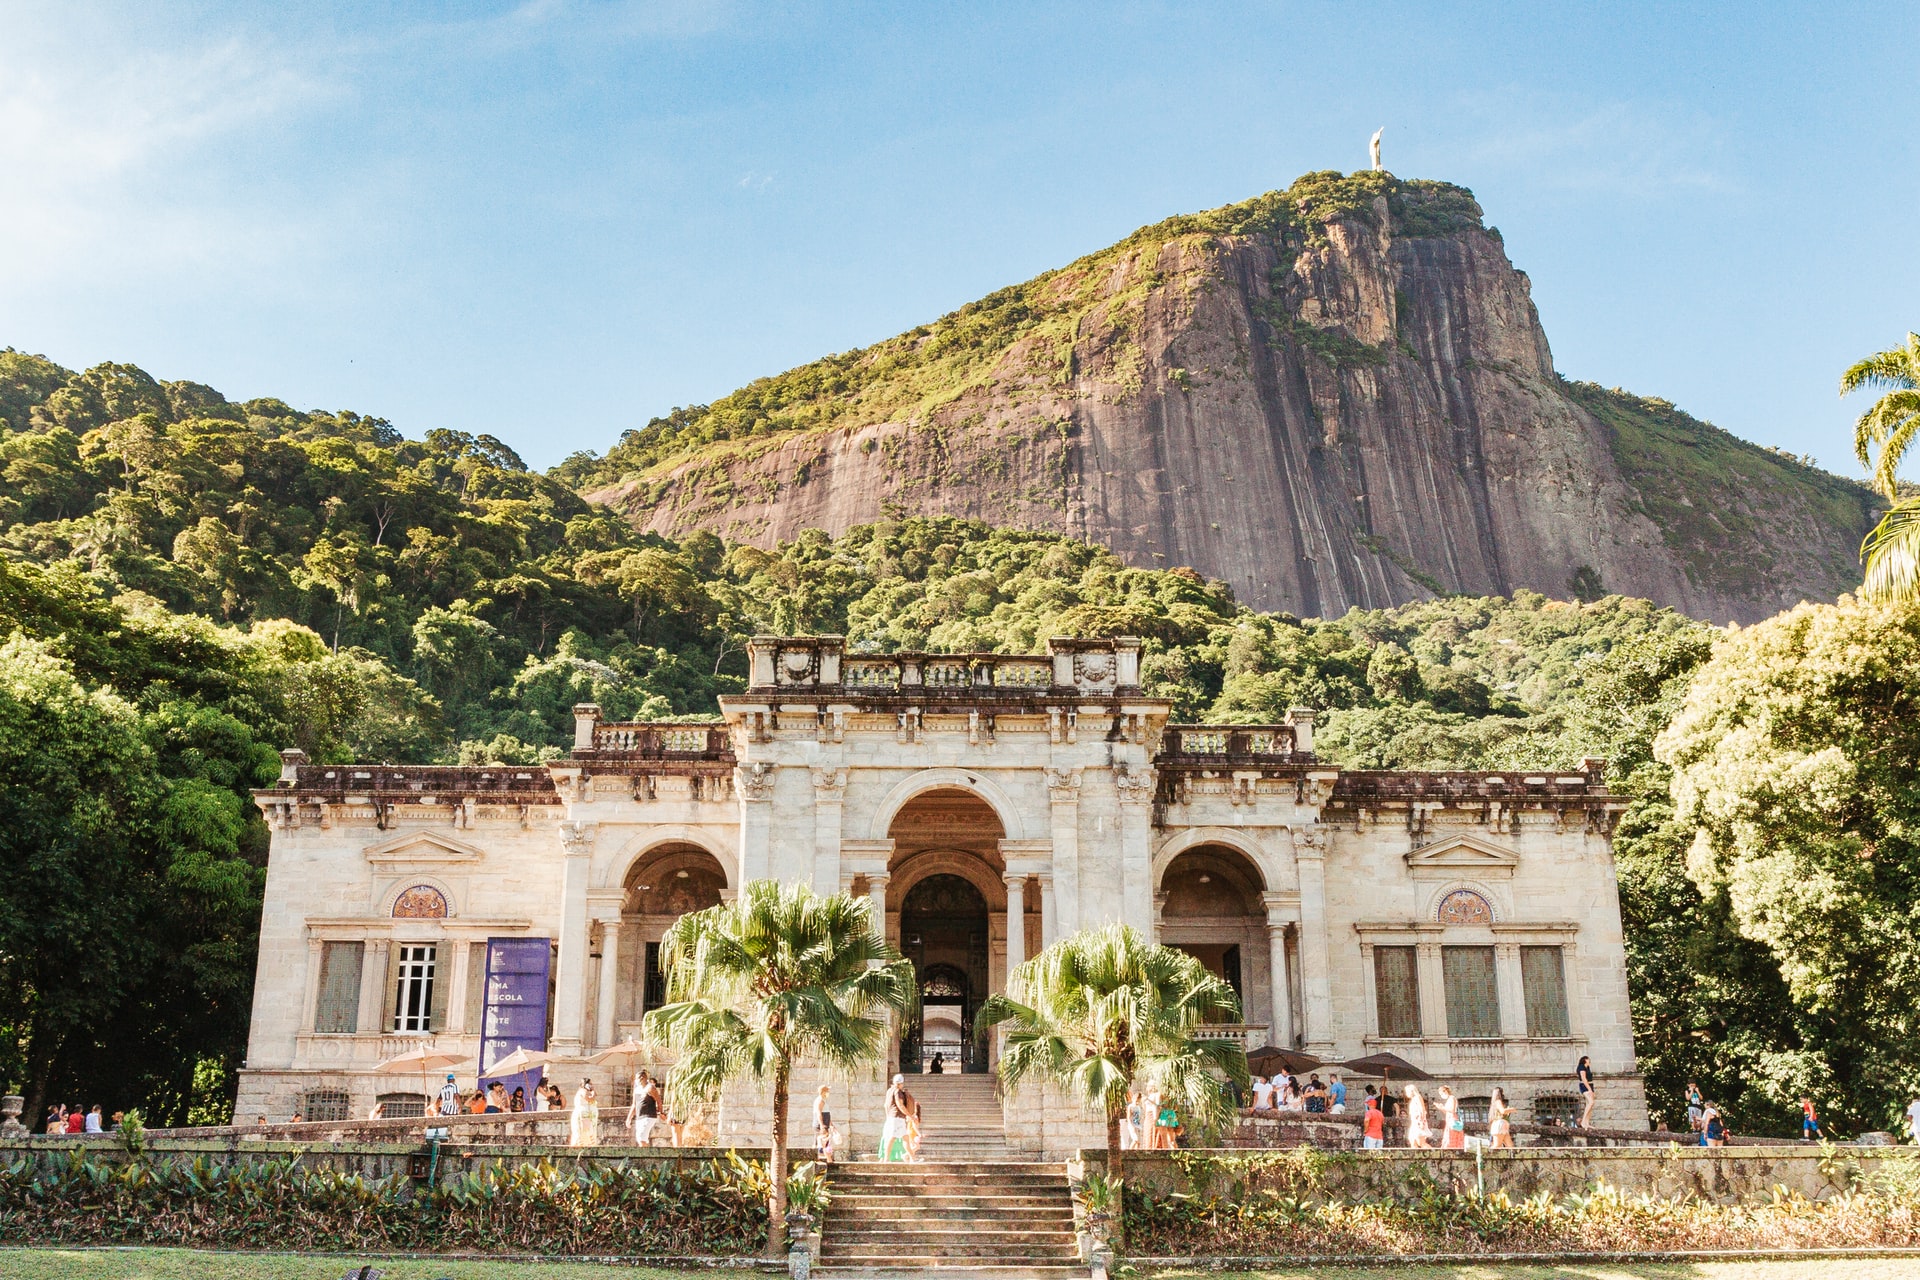 6 atrativos secretos para visitar no Rio de Janeiro - Buenas Dicas